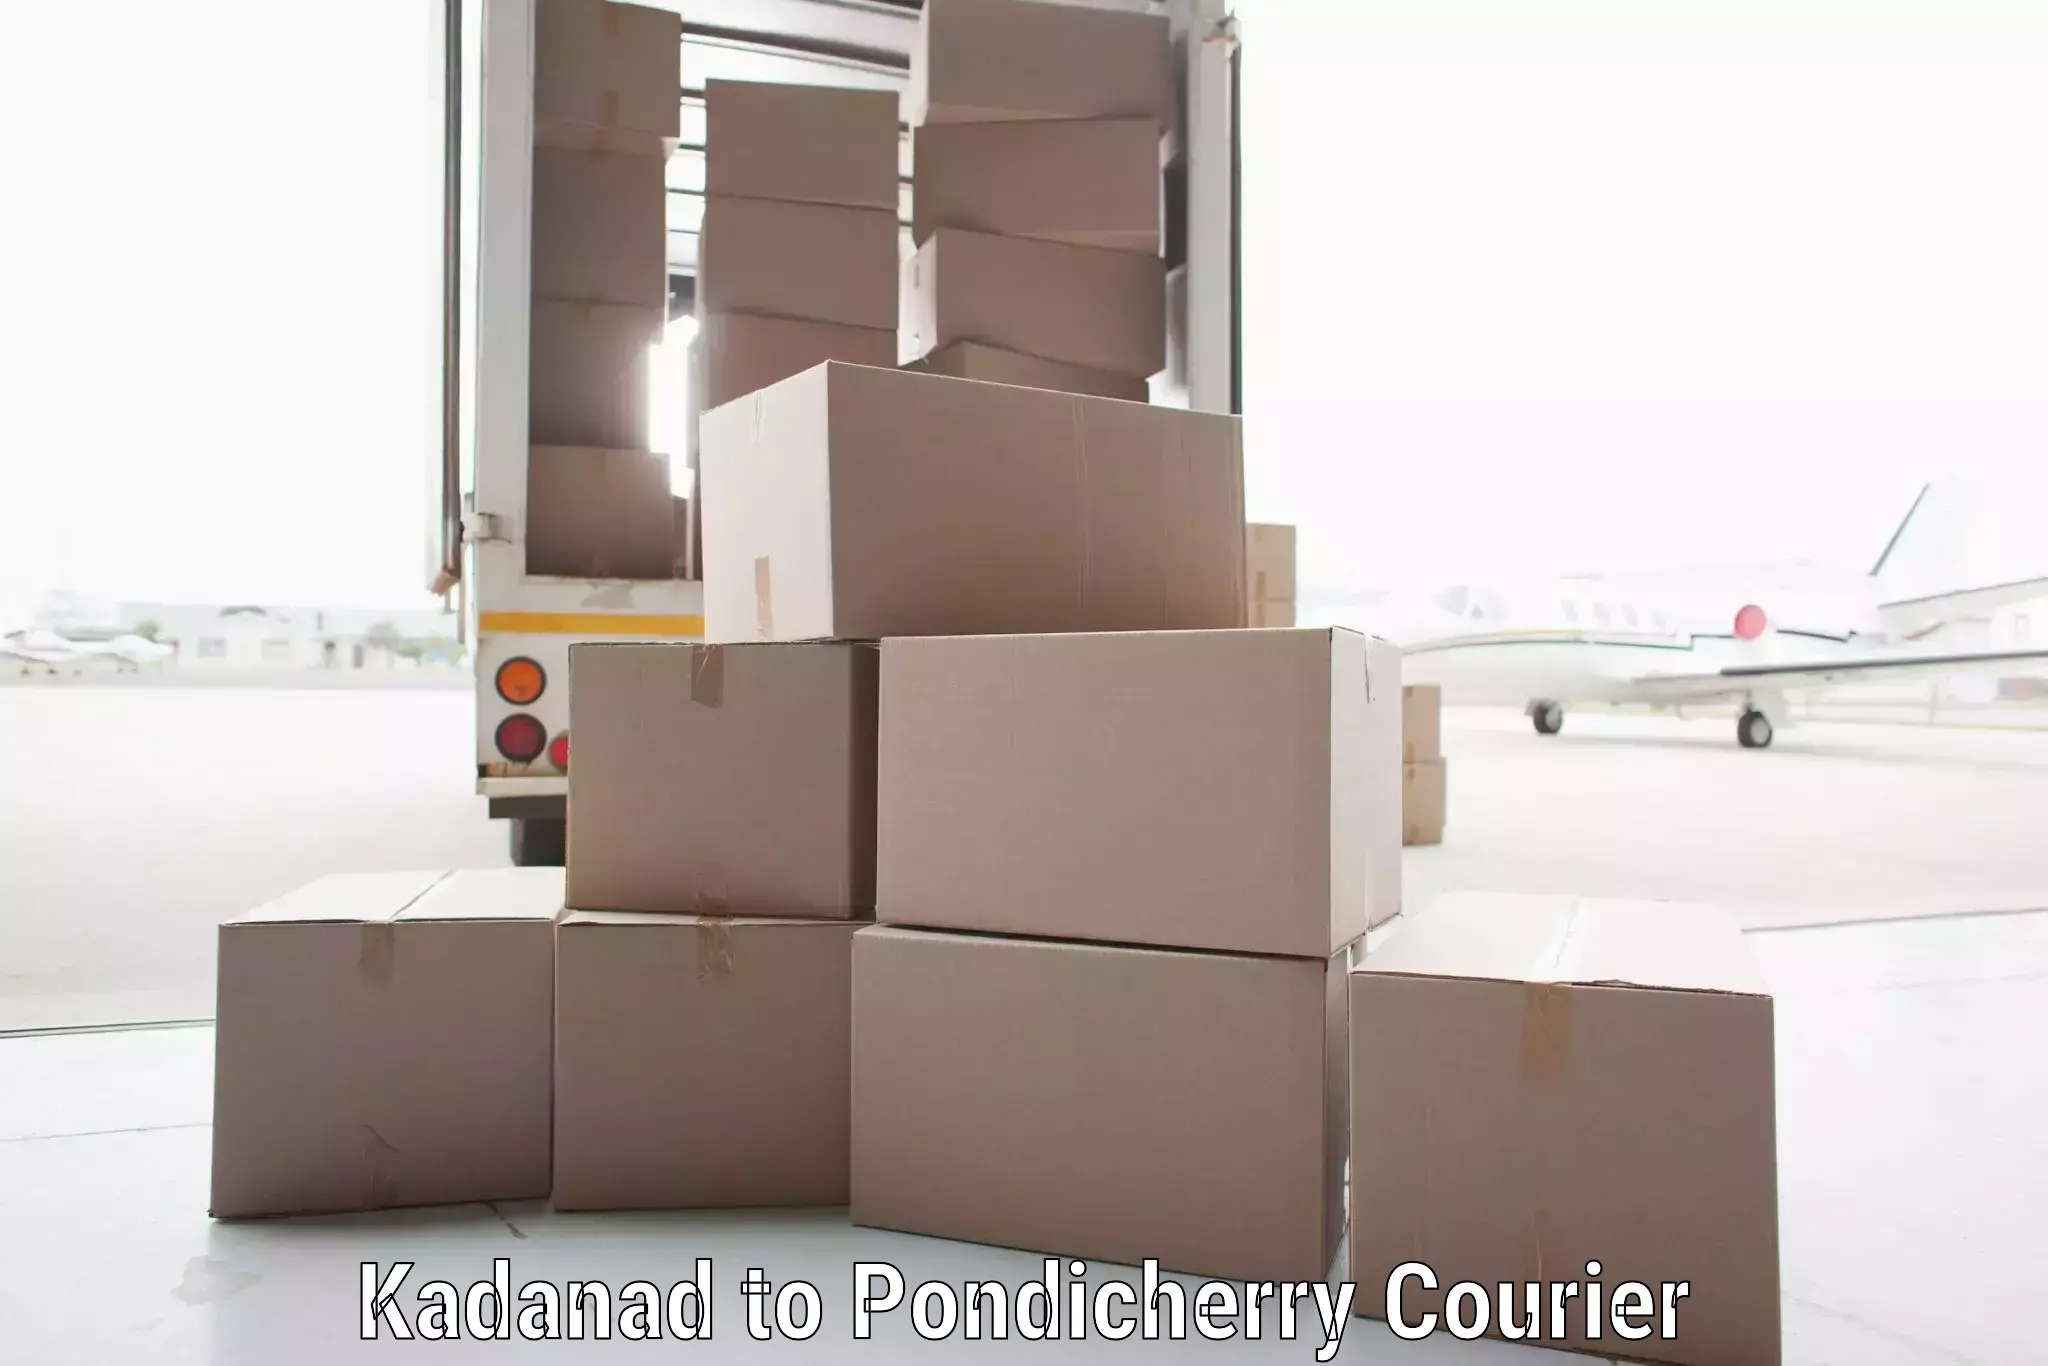 Premium delivery services Kadanad to Pondicherry